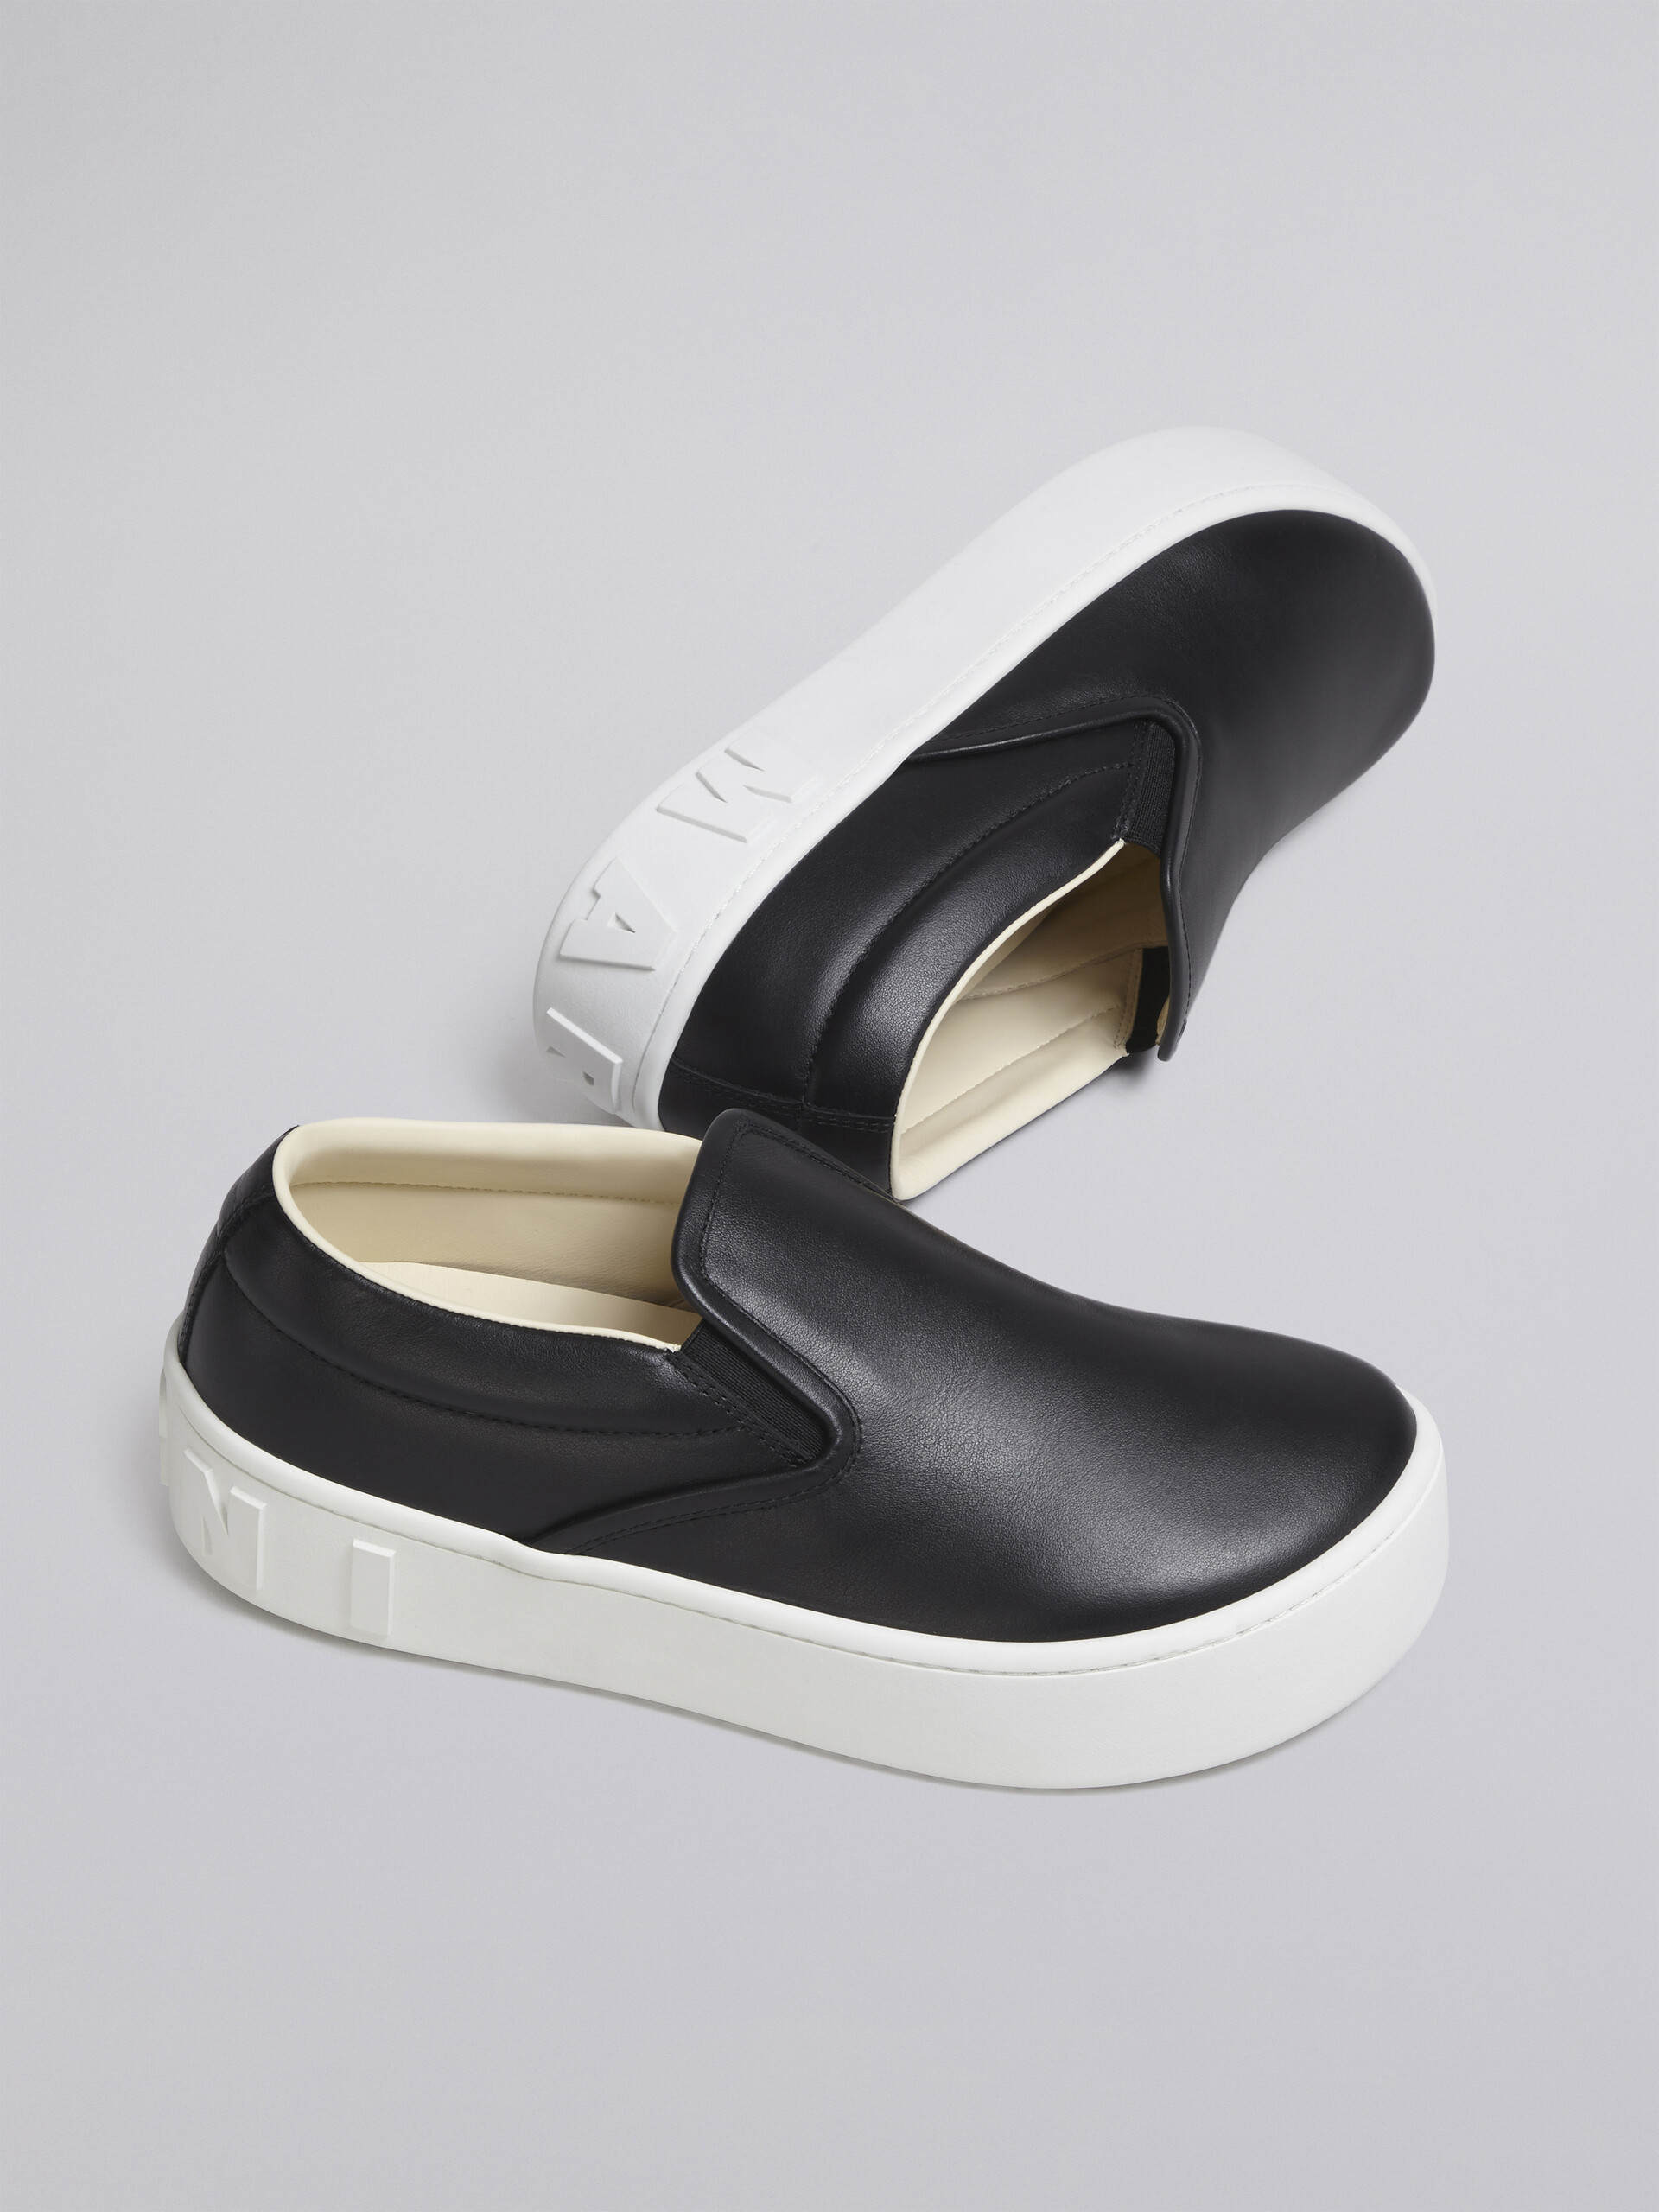 Sneaker slip-on in vitello nero con maxi logo Marni in rilievo - Sneakers - Image 5